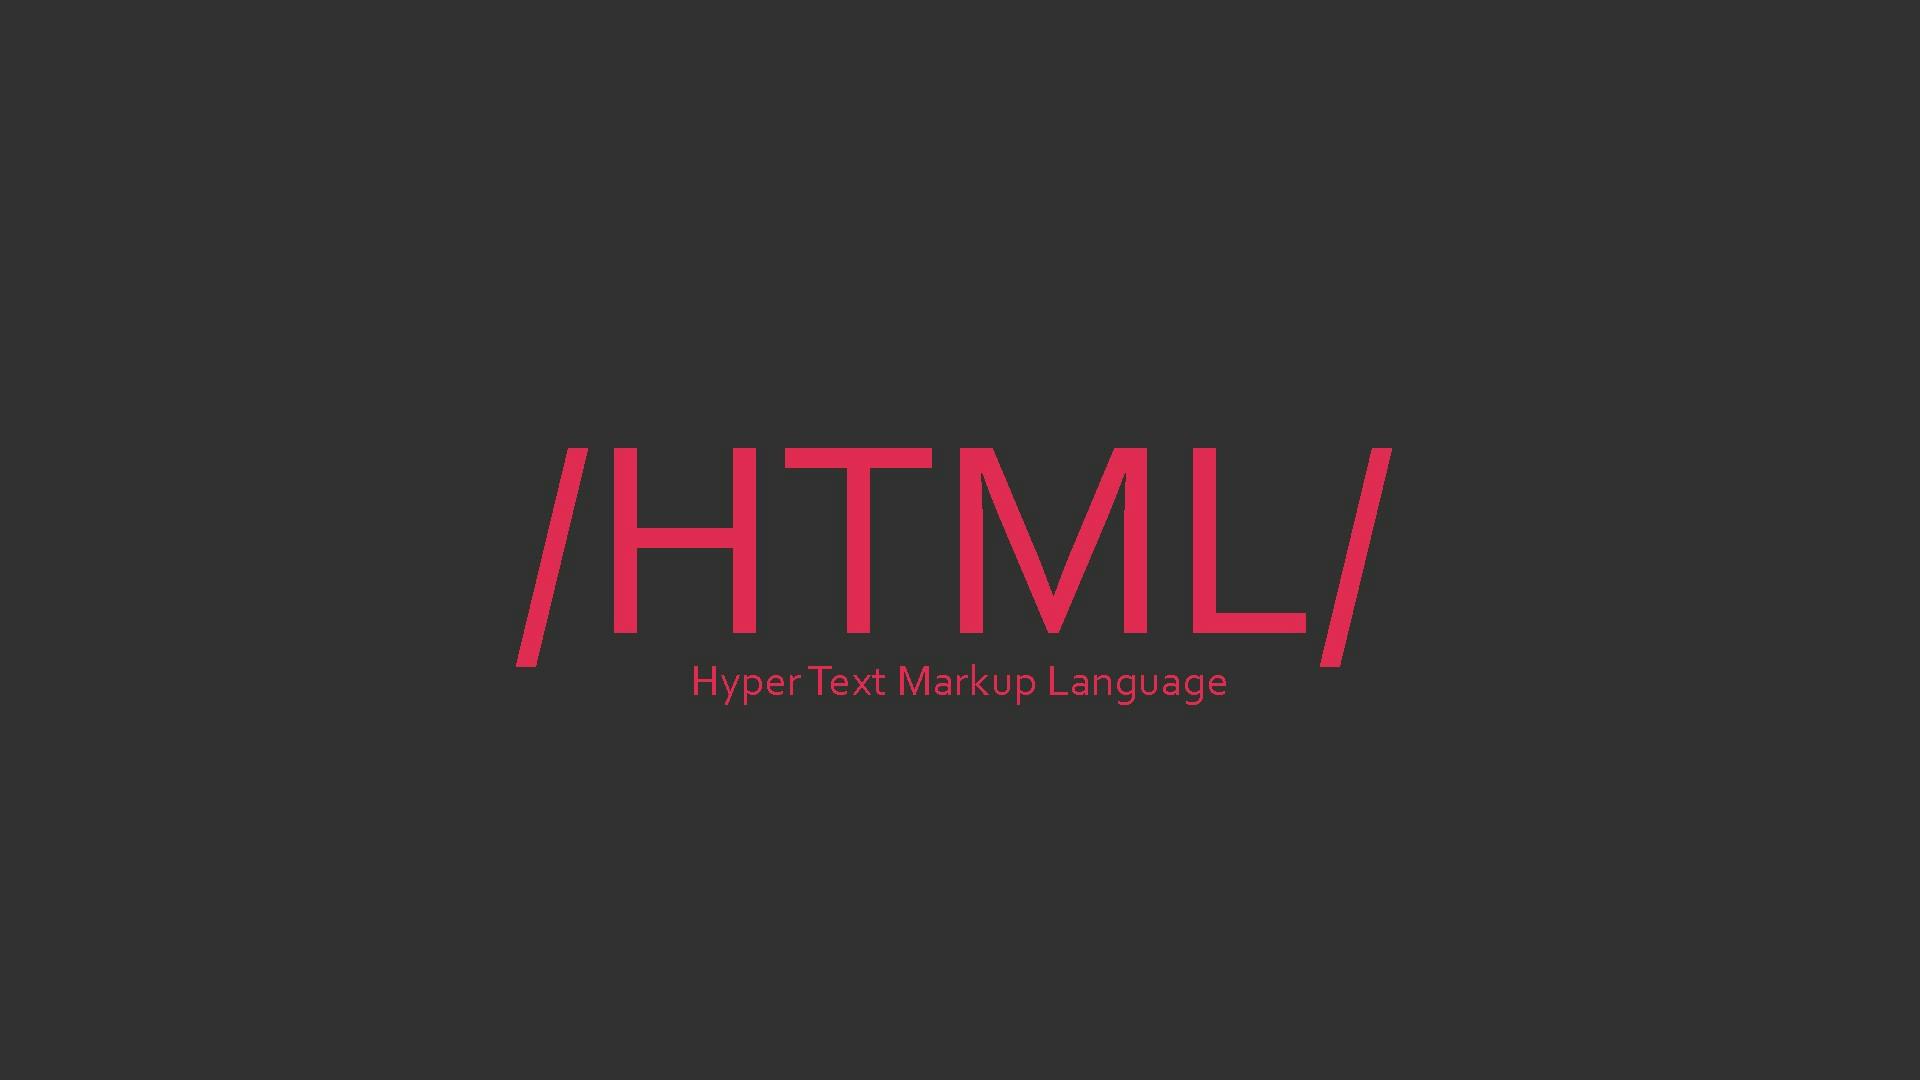 HTML.jfif